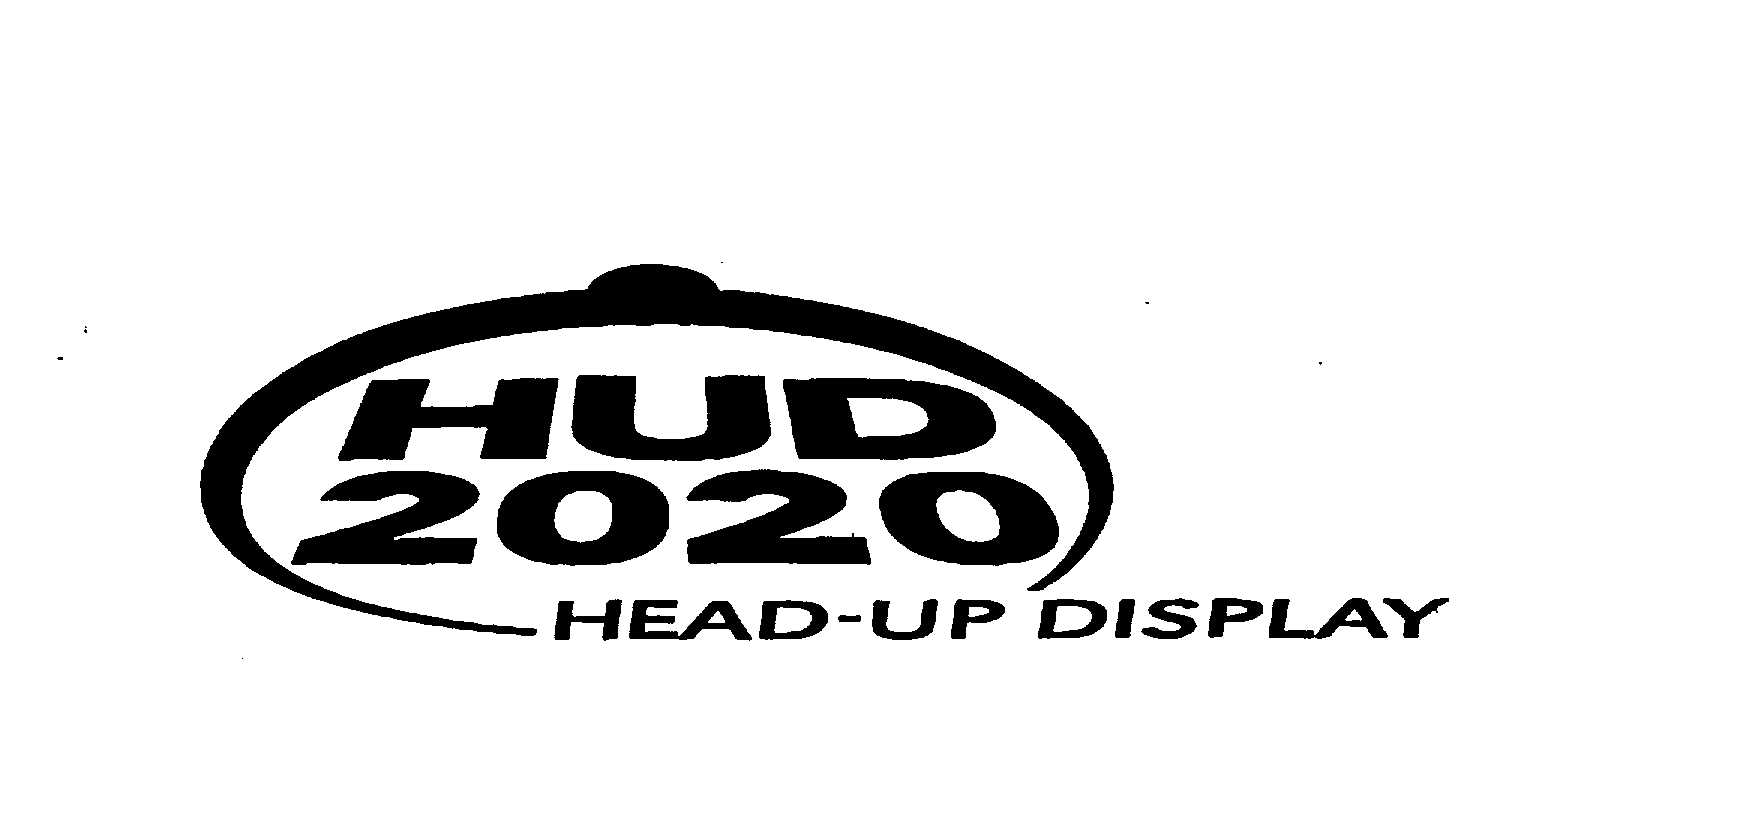  HUD 2020 HEAD-UP DISPLAY